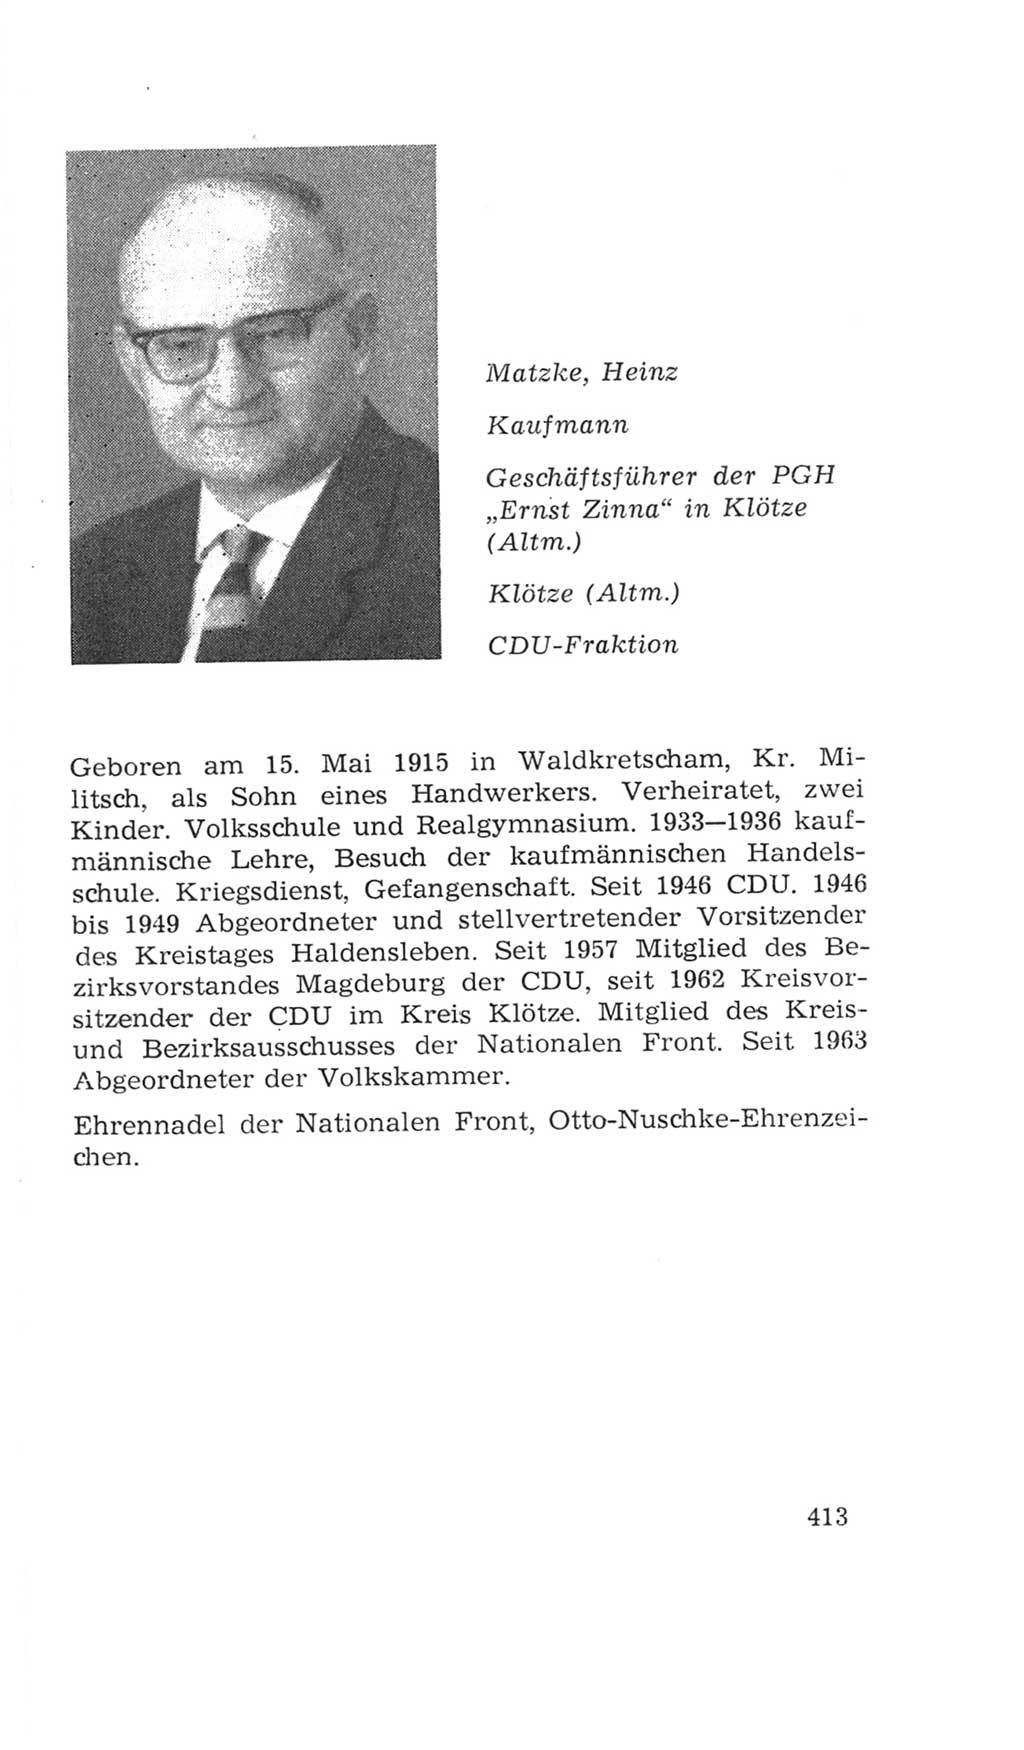 Volkskammer (VK) der Deutschen Demokratischen Republik (DDR), 4. Wahlperiode 1963-1967, Seite 413 (VK. DDR 4. WP. 1963-1967, S. 413)